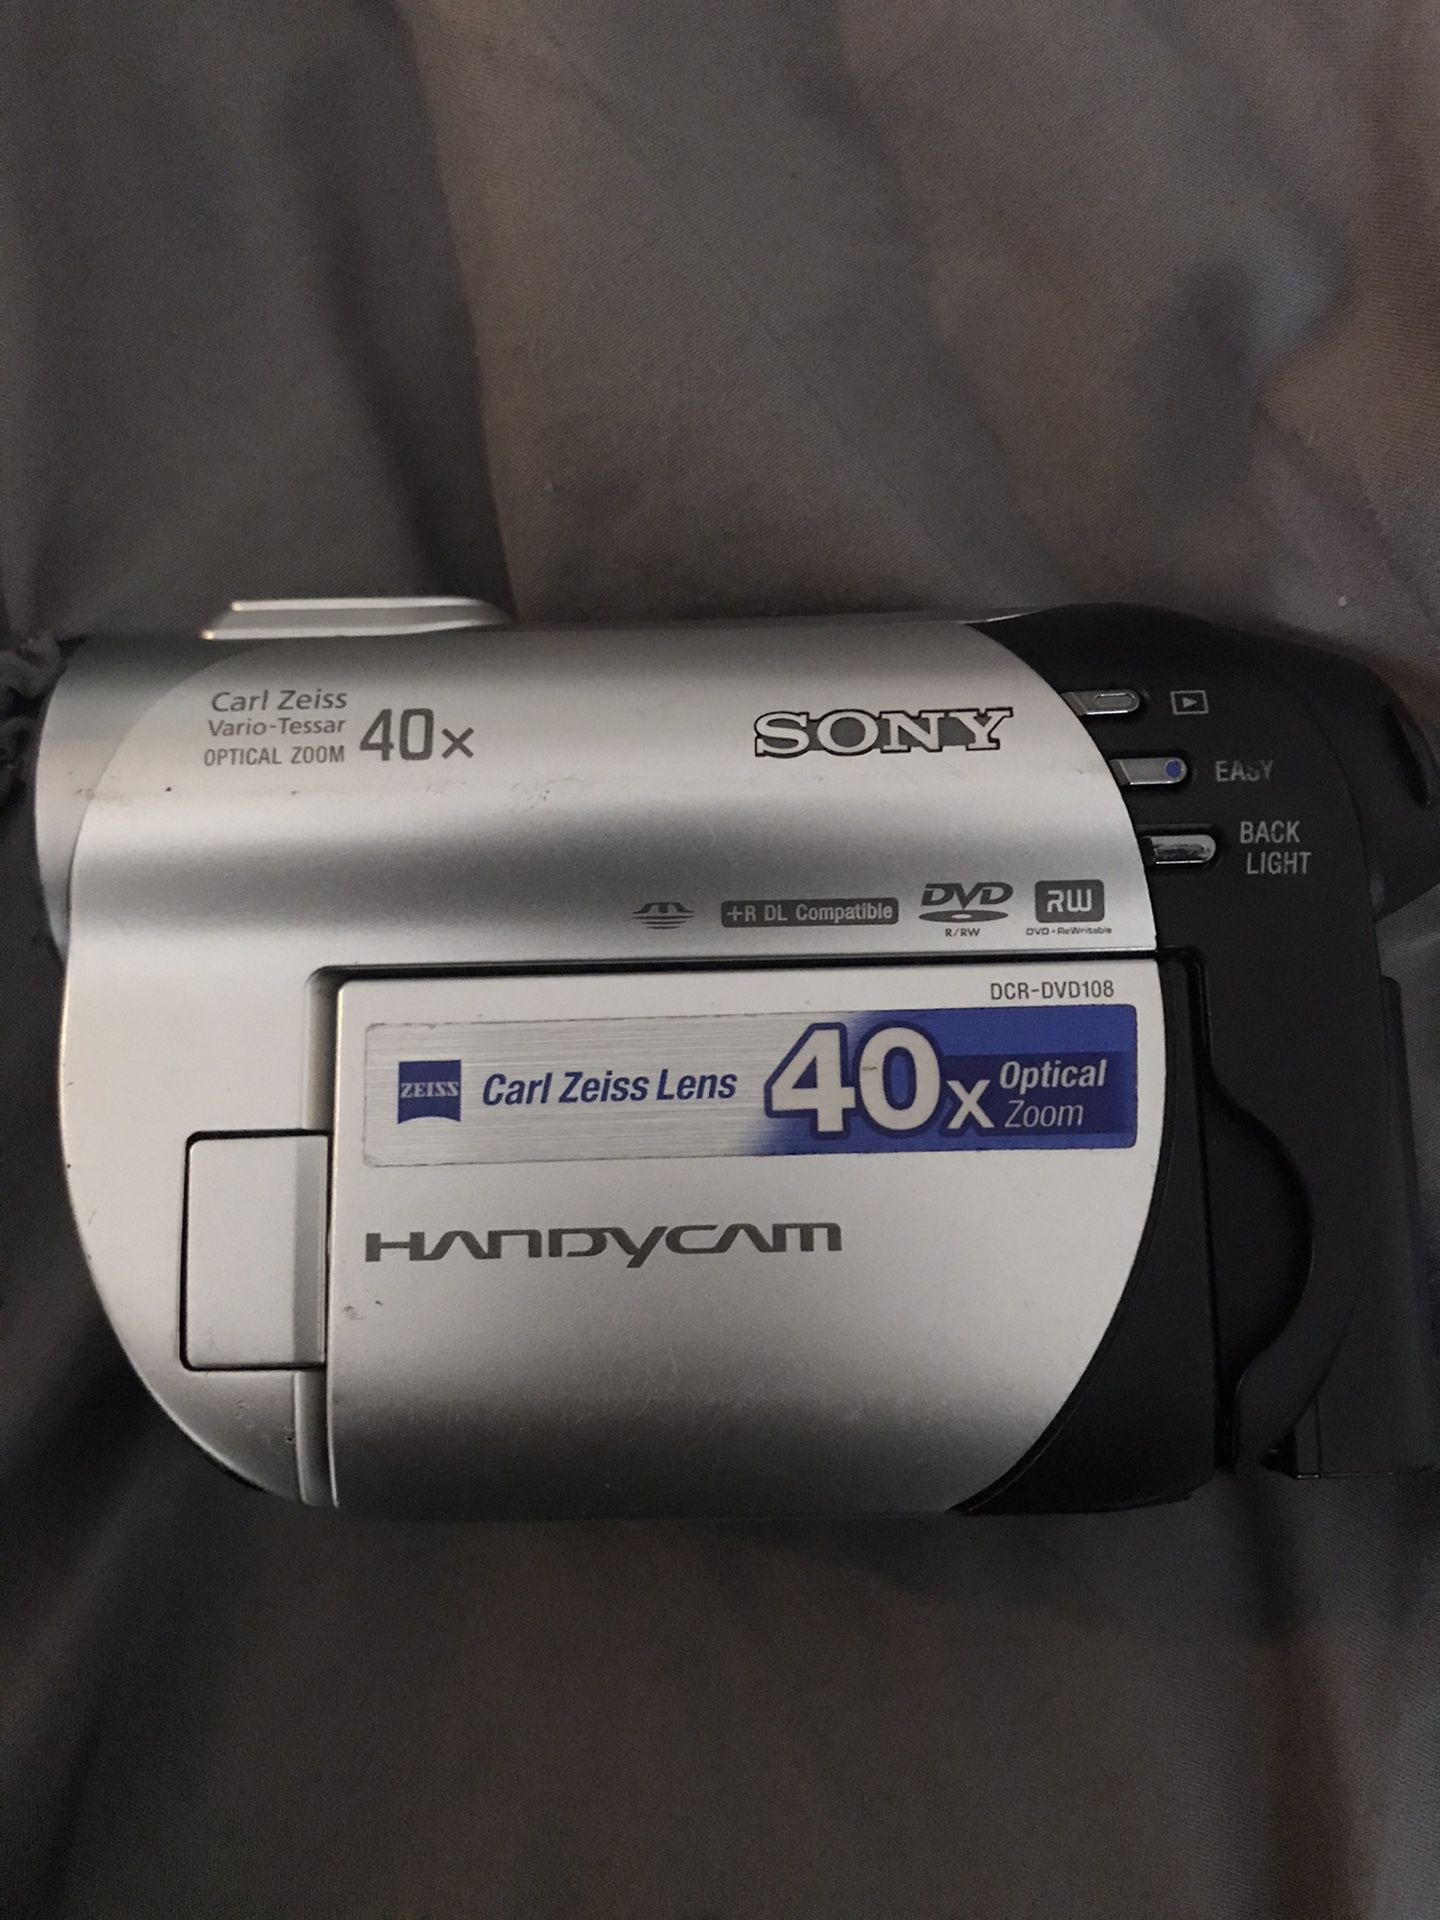 Sony Handycam w/Carl Zeiss